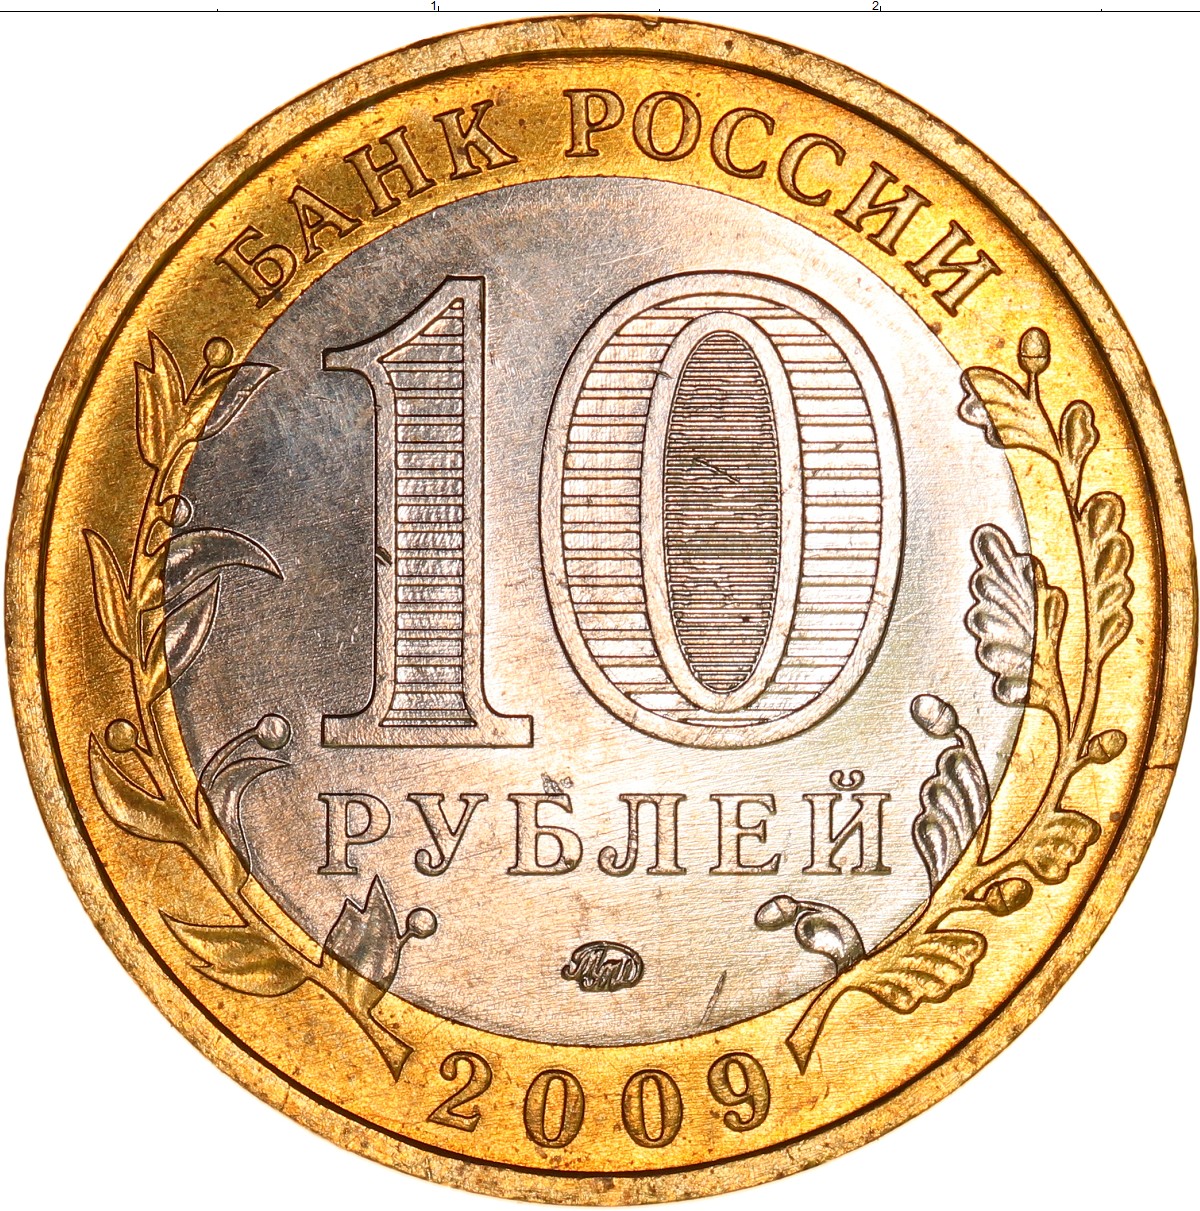 10 рублей биметалл список всех монет. Биметалл. 10 Руб 2009 года. Российское 10 рублей 2009 года.